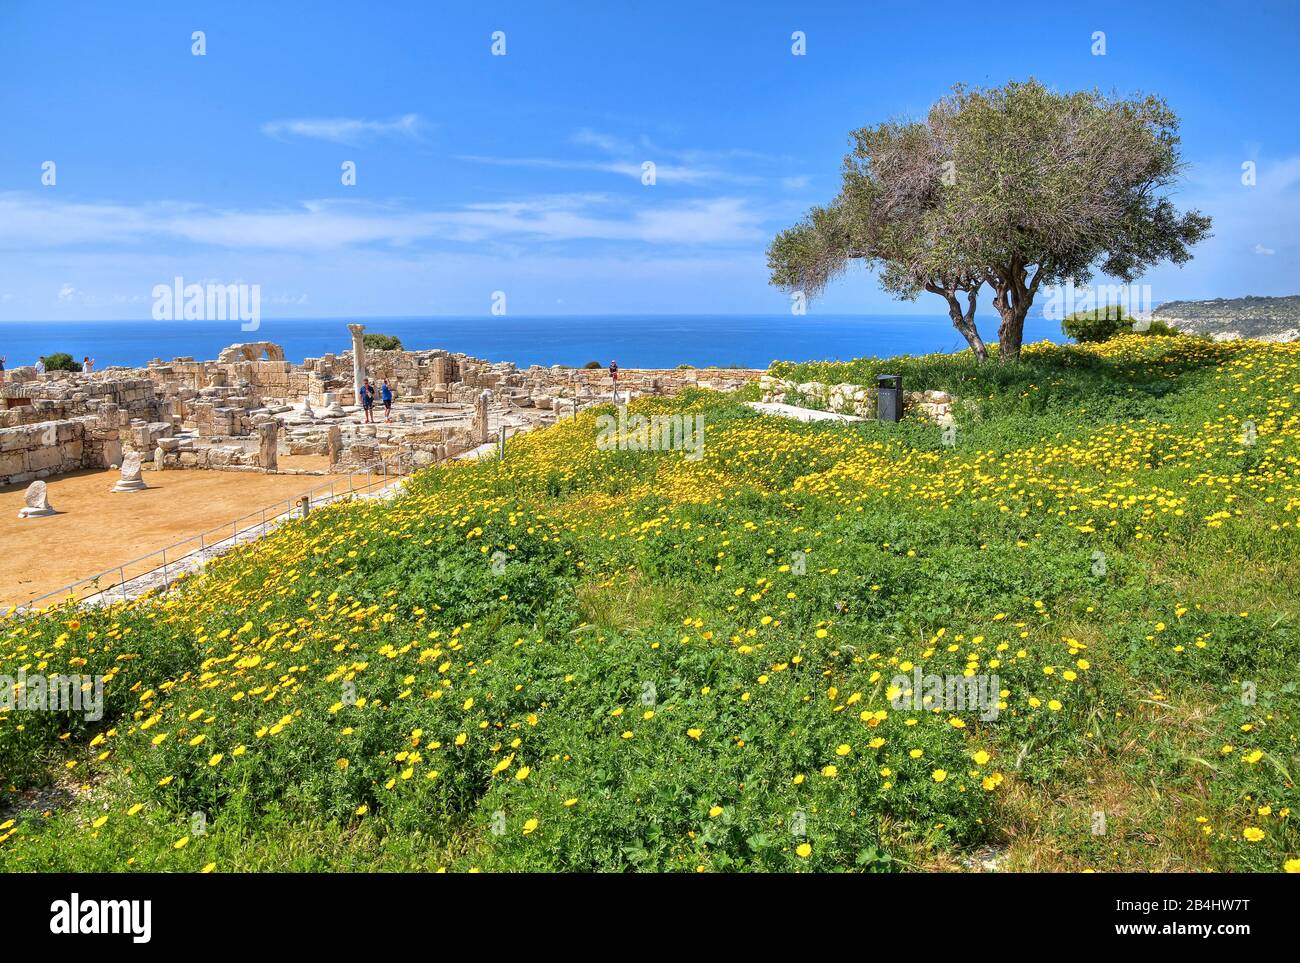 Prato primaverile presso l'Agora sopra la scogliera nel sito archeologico antico Kourion a Limassol, costa mediterranea, Cipro Foto Stock